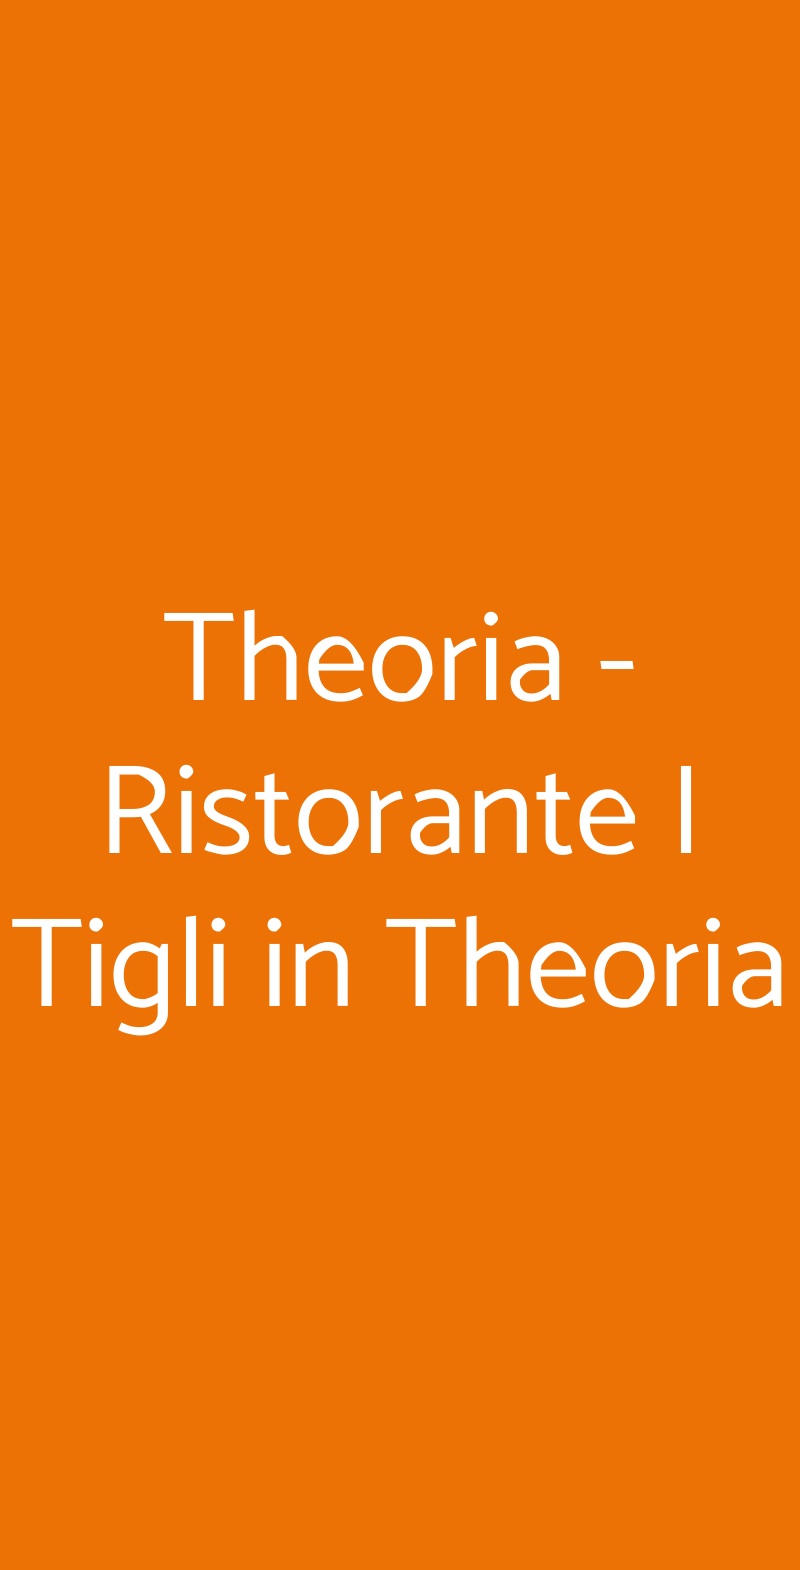 Theoria - Ristorante I Tigli in Theoria Como menù 1 pagina